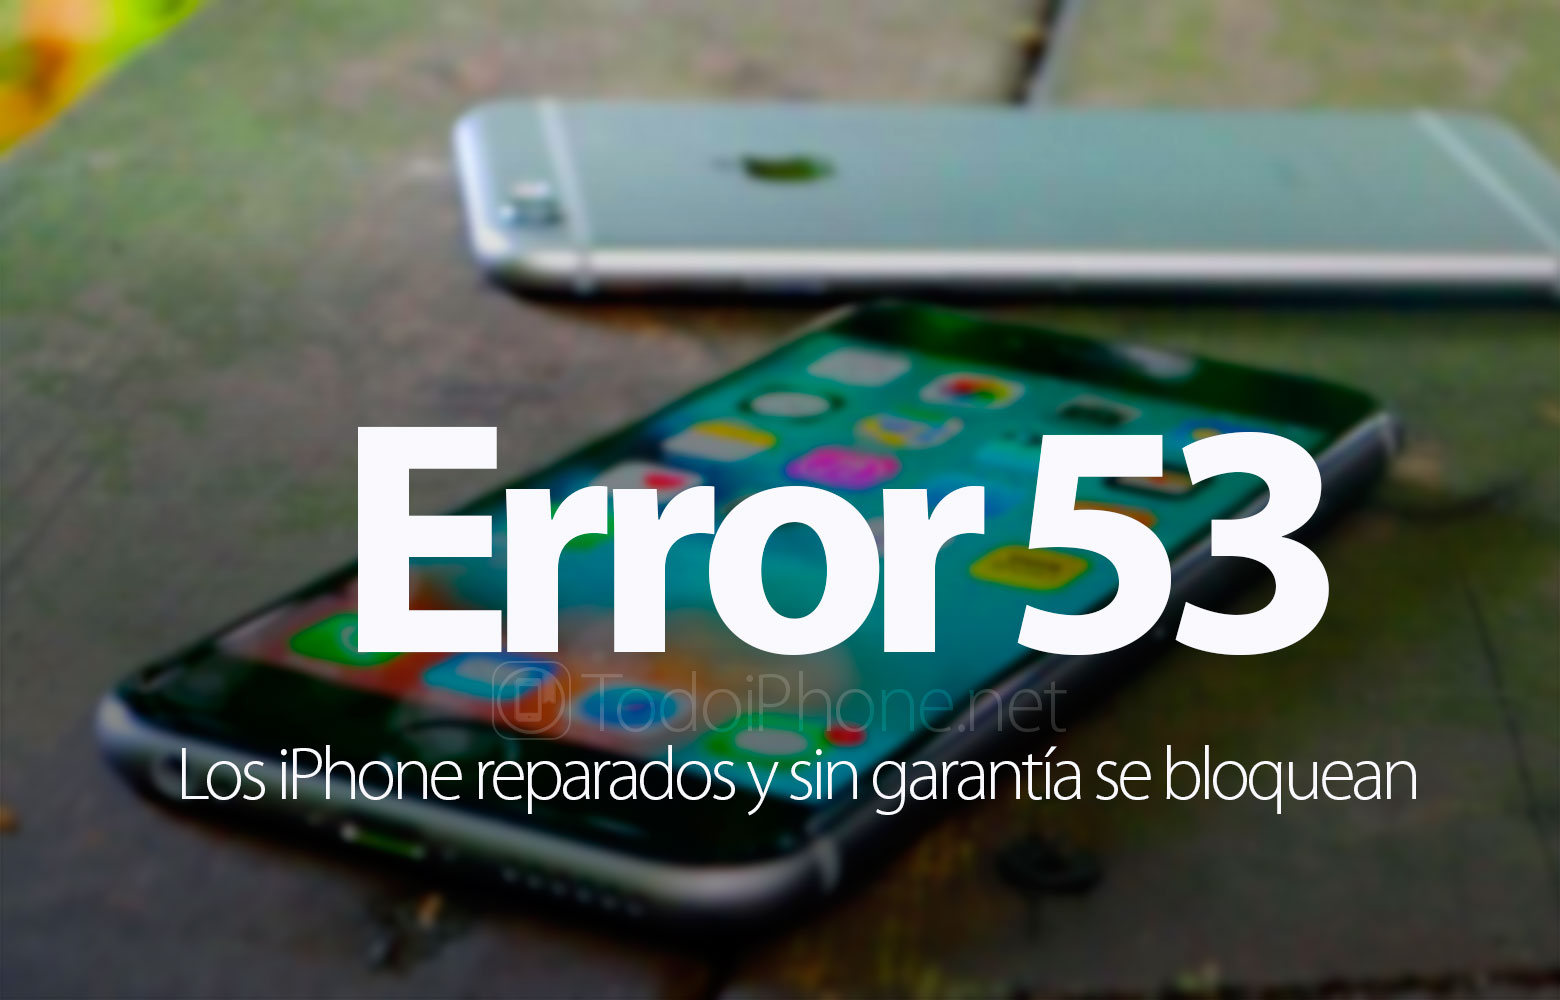 error-53-iphone-reparados-sin-garantia-bloquean